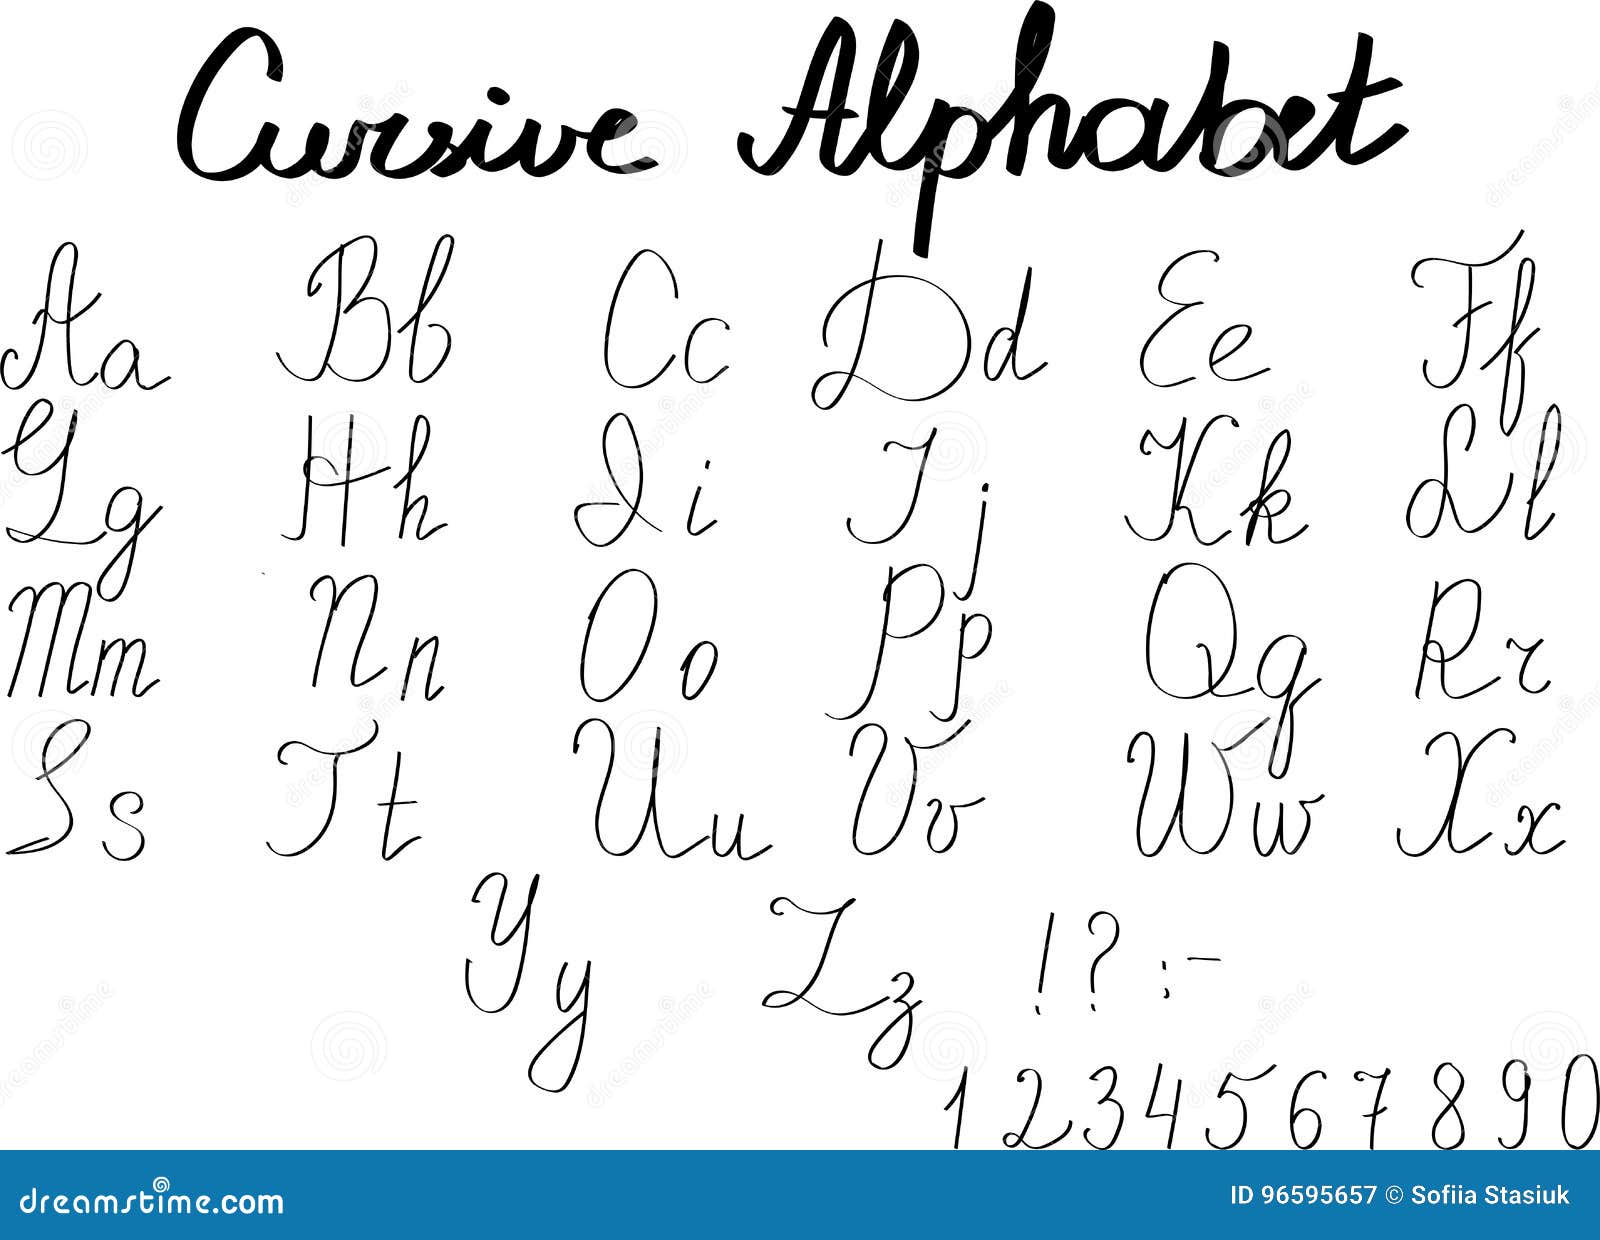 Featured image of post Alfabeto Espa ol En Letra Cursiva El abecedario o alfabeto espa ol cuenta con 27 letras